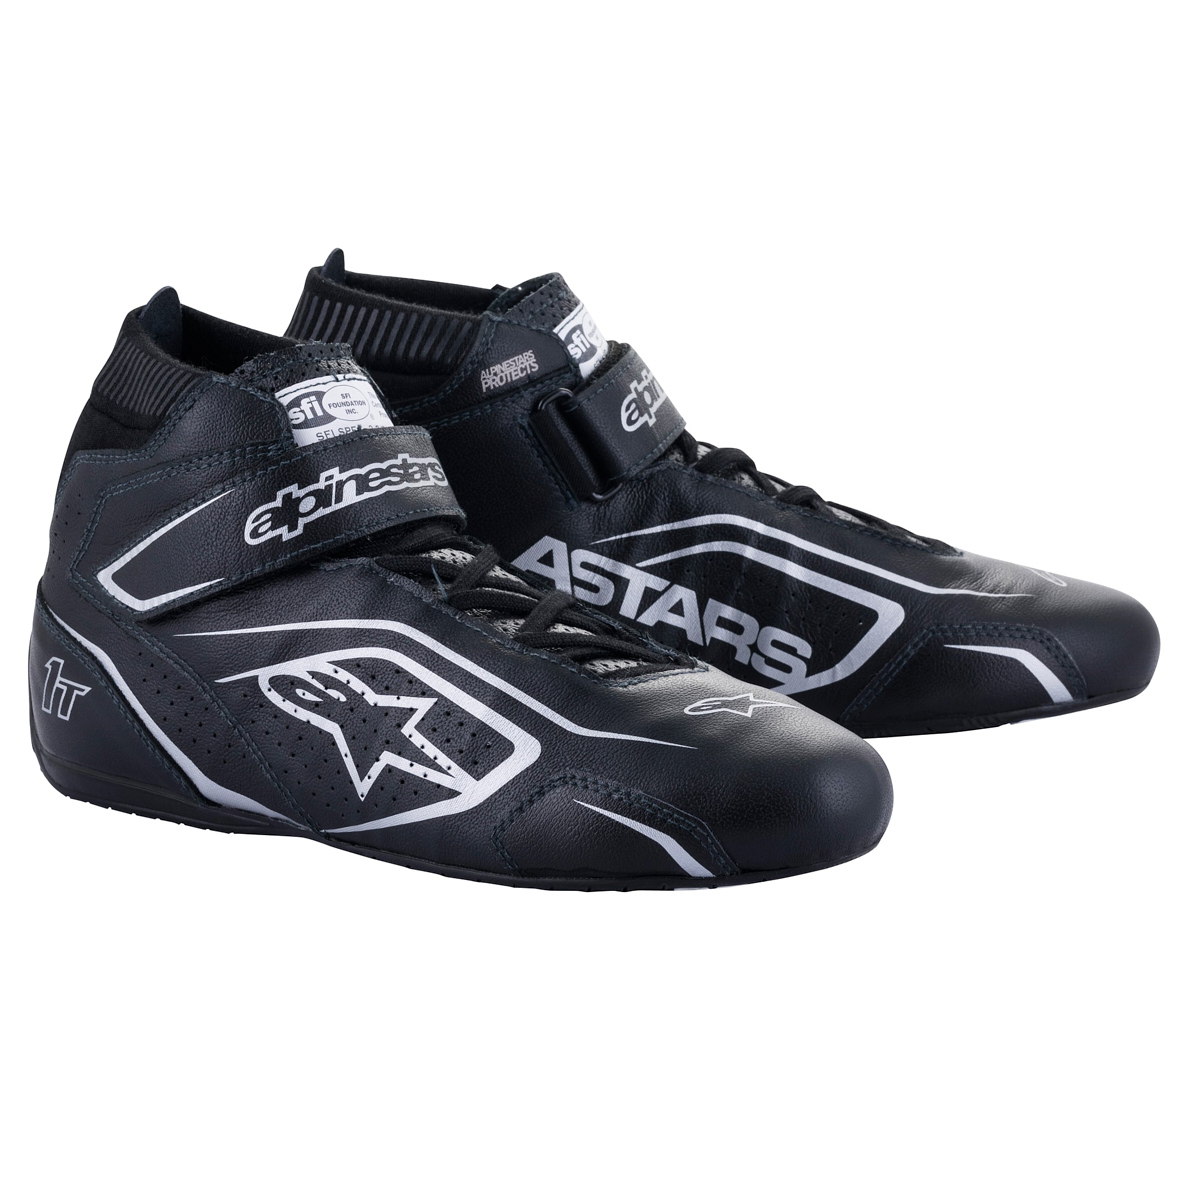 Alpinestars 2710122-119-13 - Shoe Tech-1T V3 Black / Silver Size 13